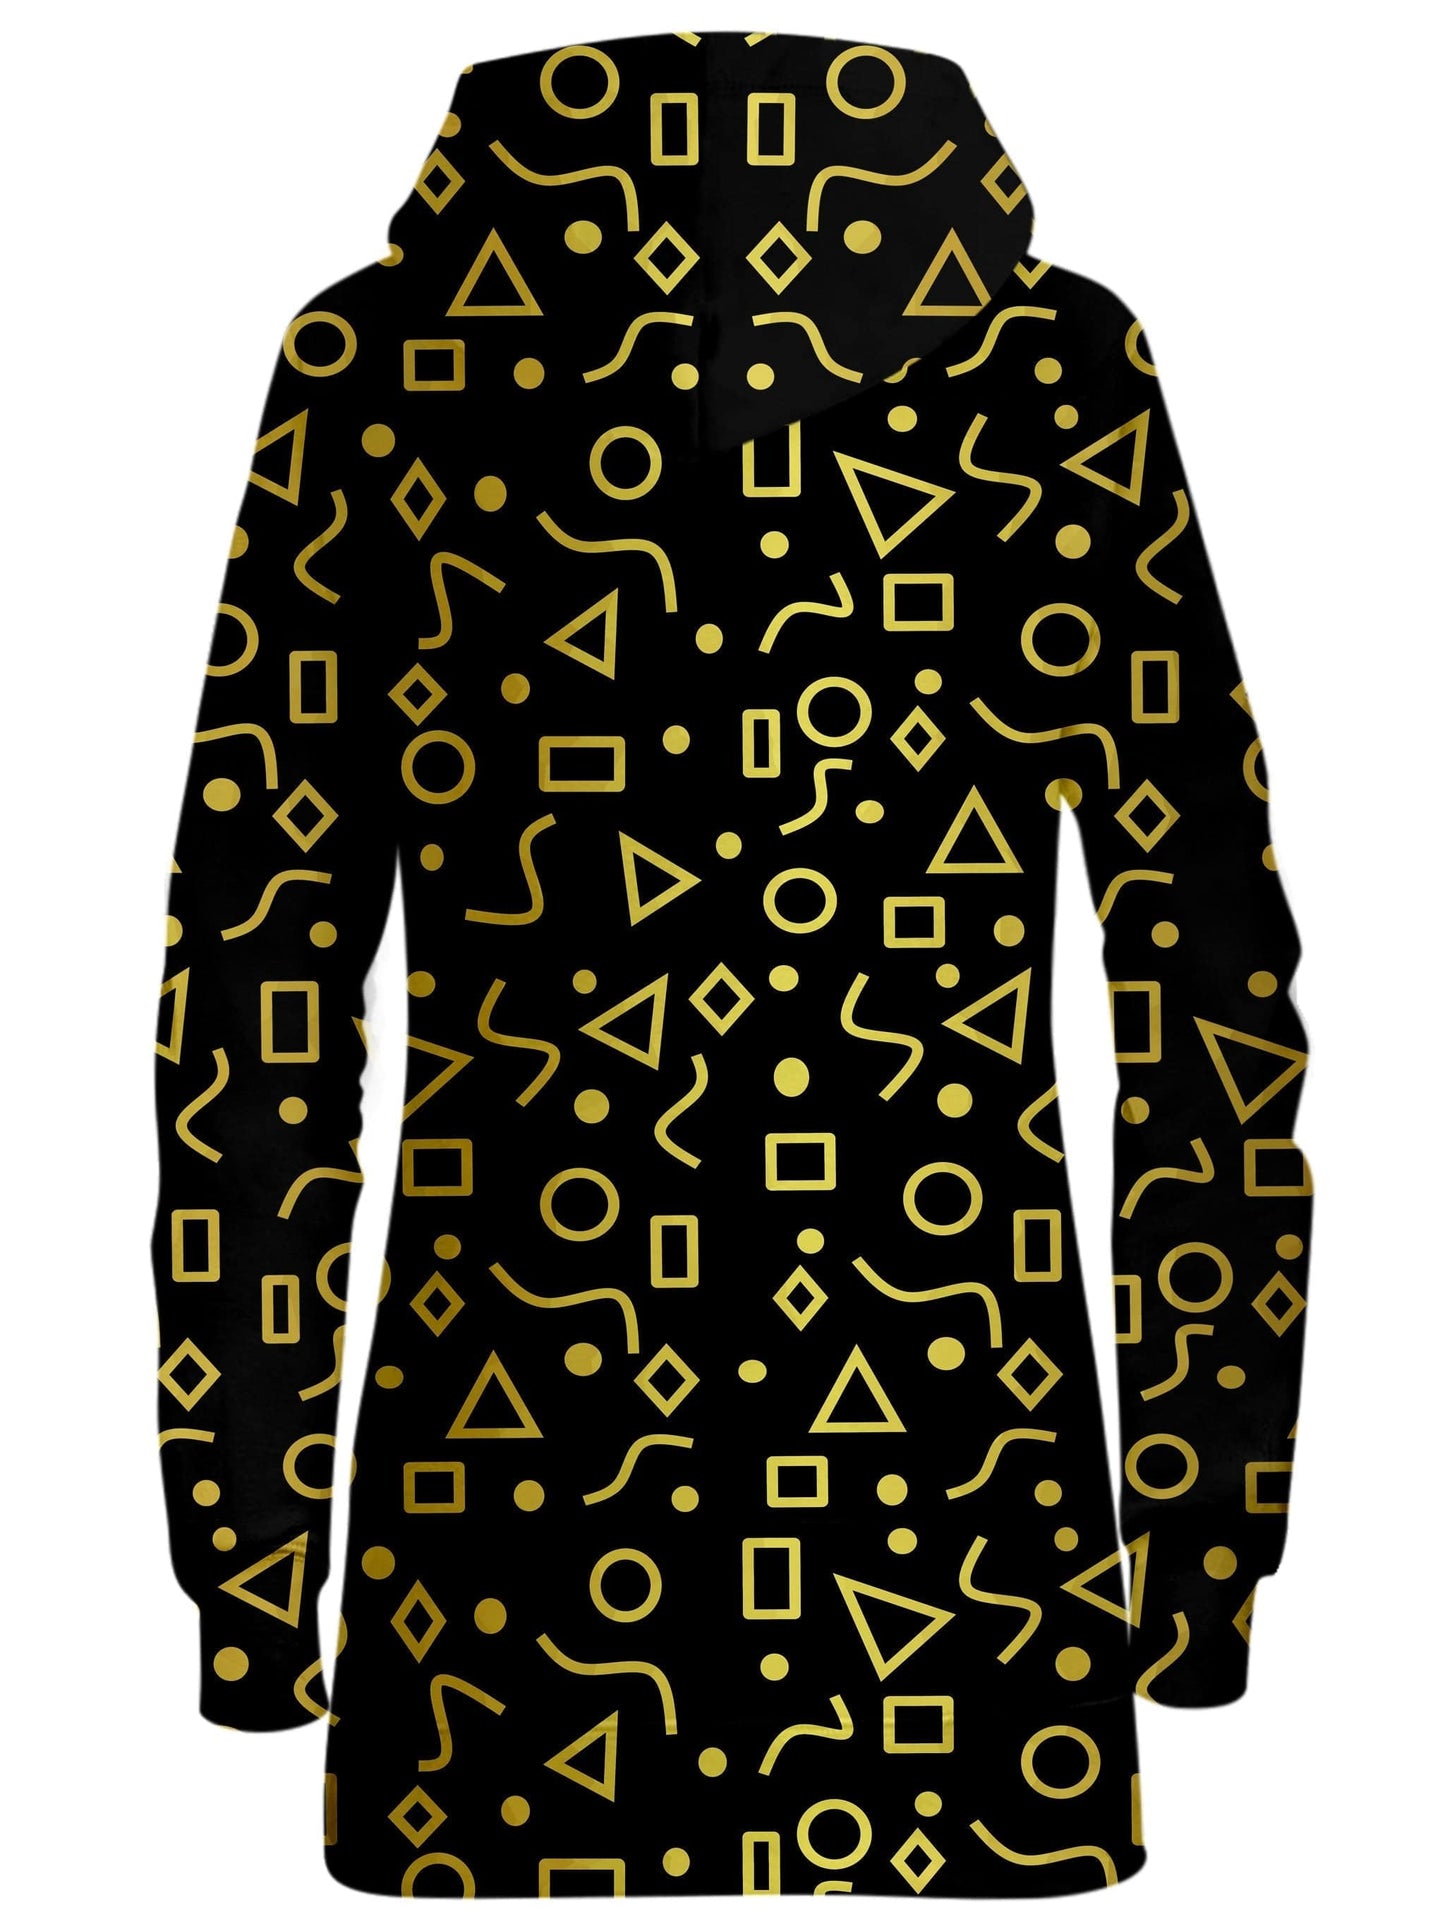 Mod Gold Shapes Hoodie Dress, Sartoris Art, | iEDM